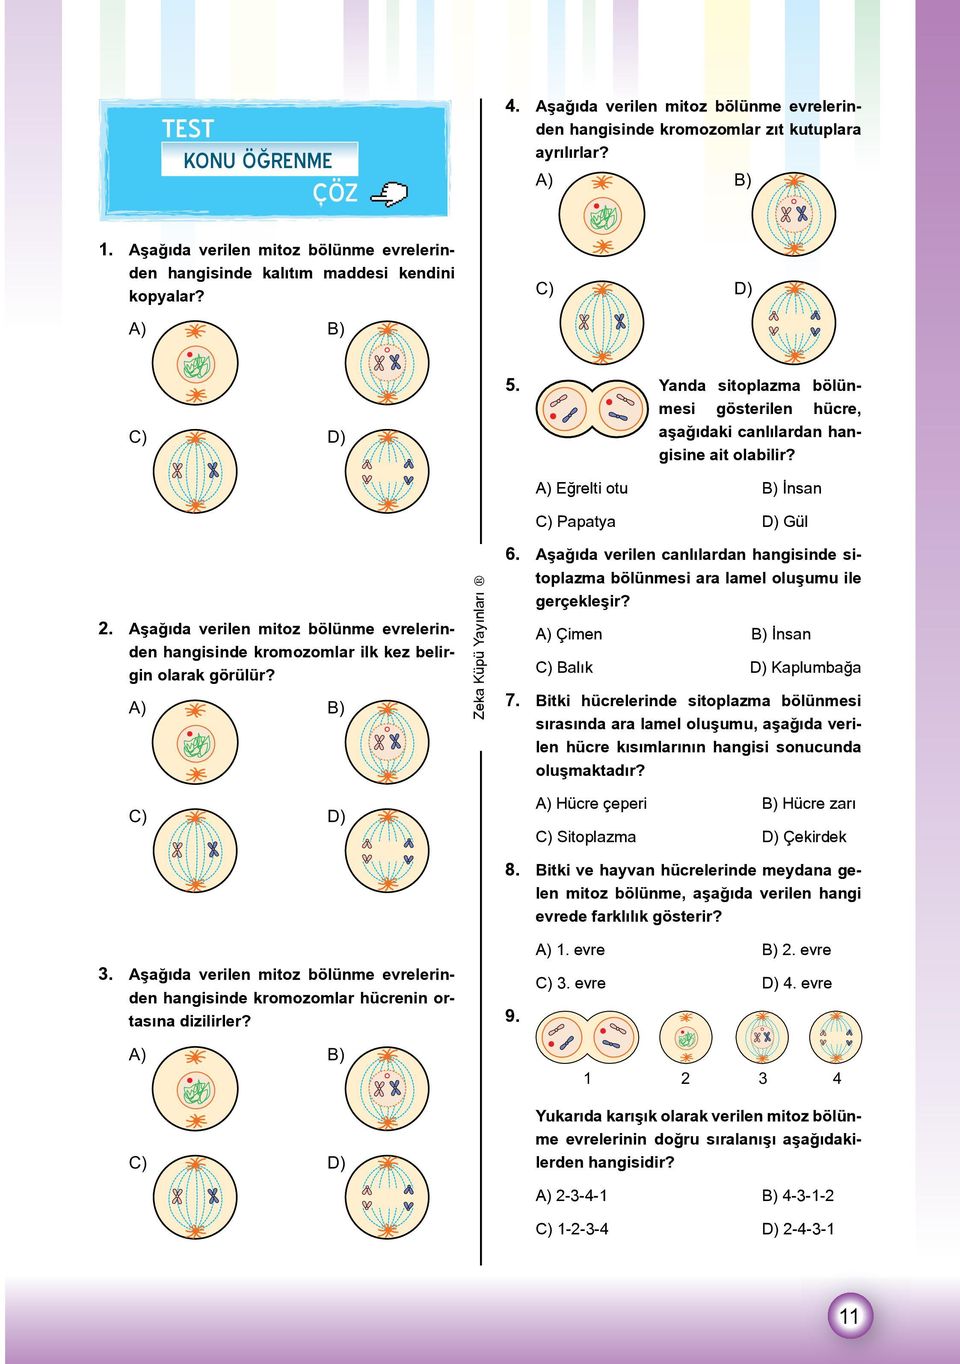 A) Eğrelti otu B) İnsan C) Papatya D) Gül 2. Aşağıda verilen mitoz bölünme evrelerinden hangisinde kromozomlar ilk kez belirgin olarak görülür? A) B) 6.